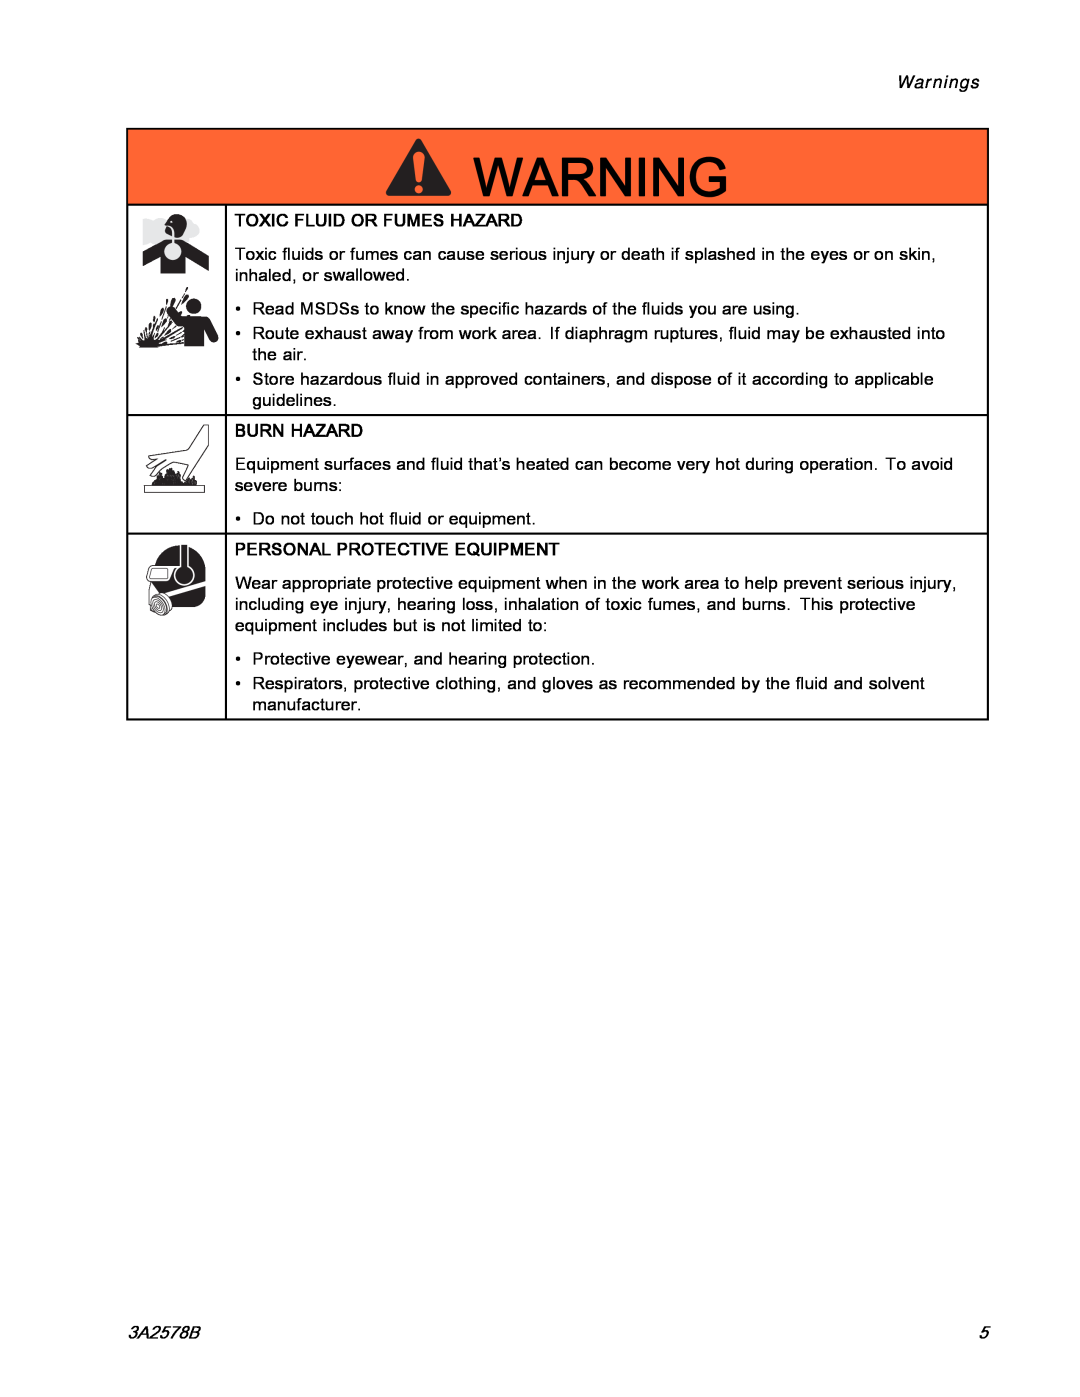 Graco 3A2578B Warnings, Toxic Fluid Or Fumes Hazard, Burn Hazard, Personal Protective Equipment 